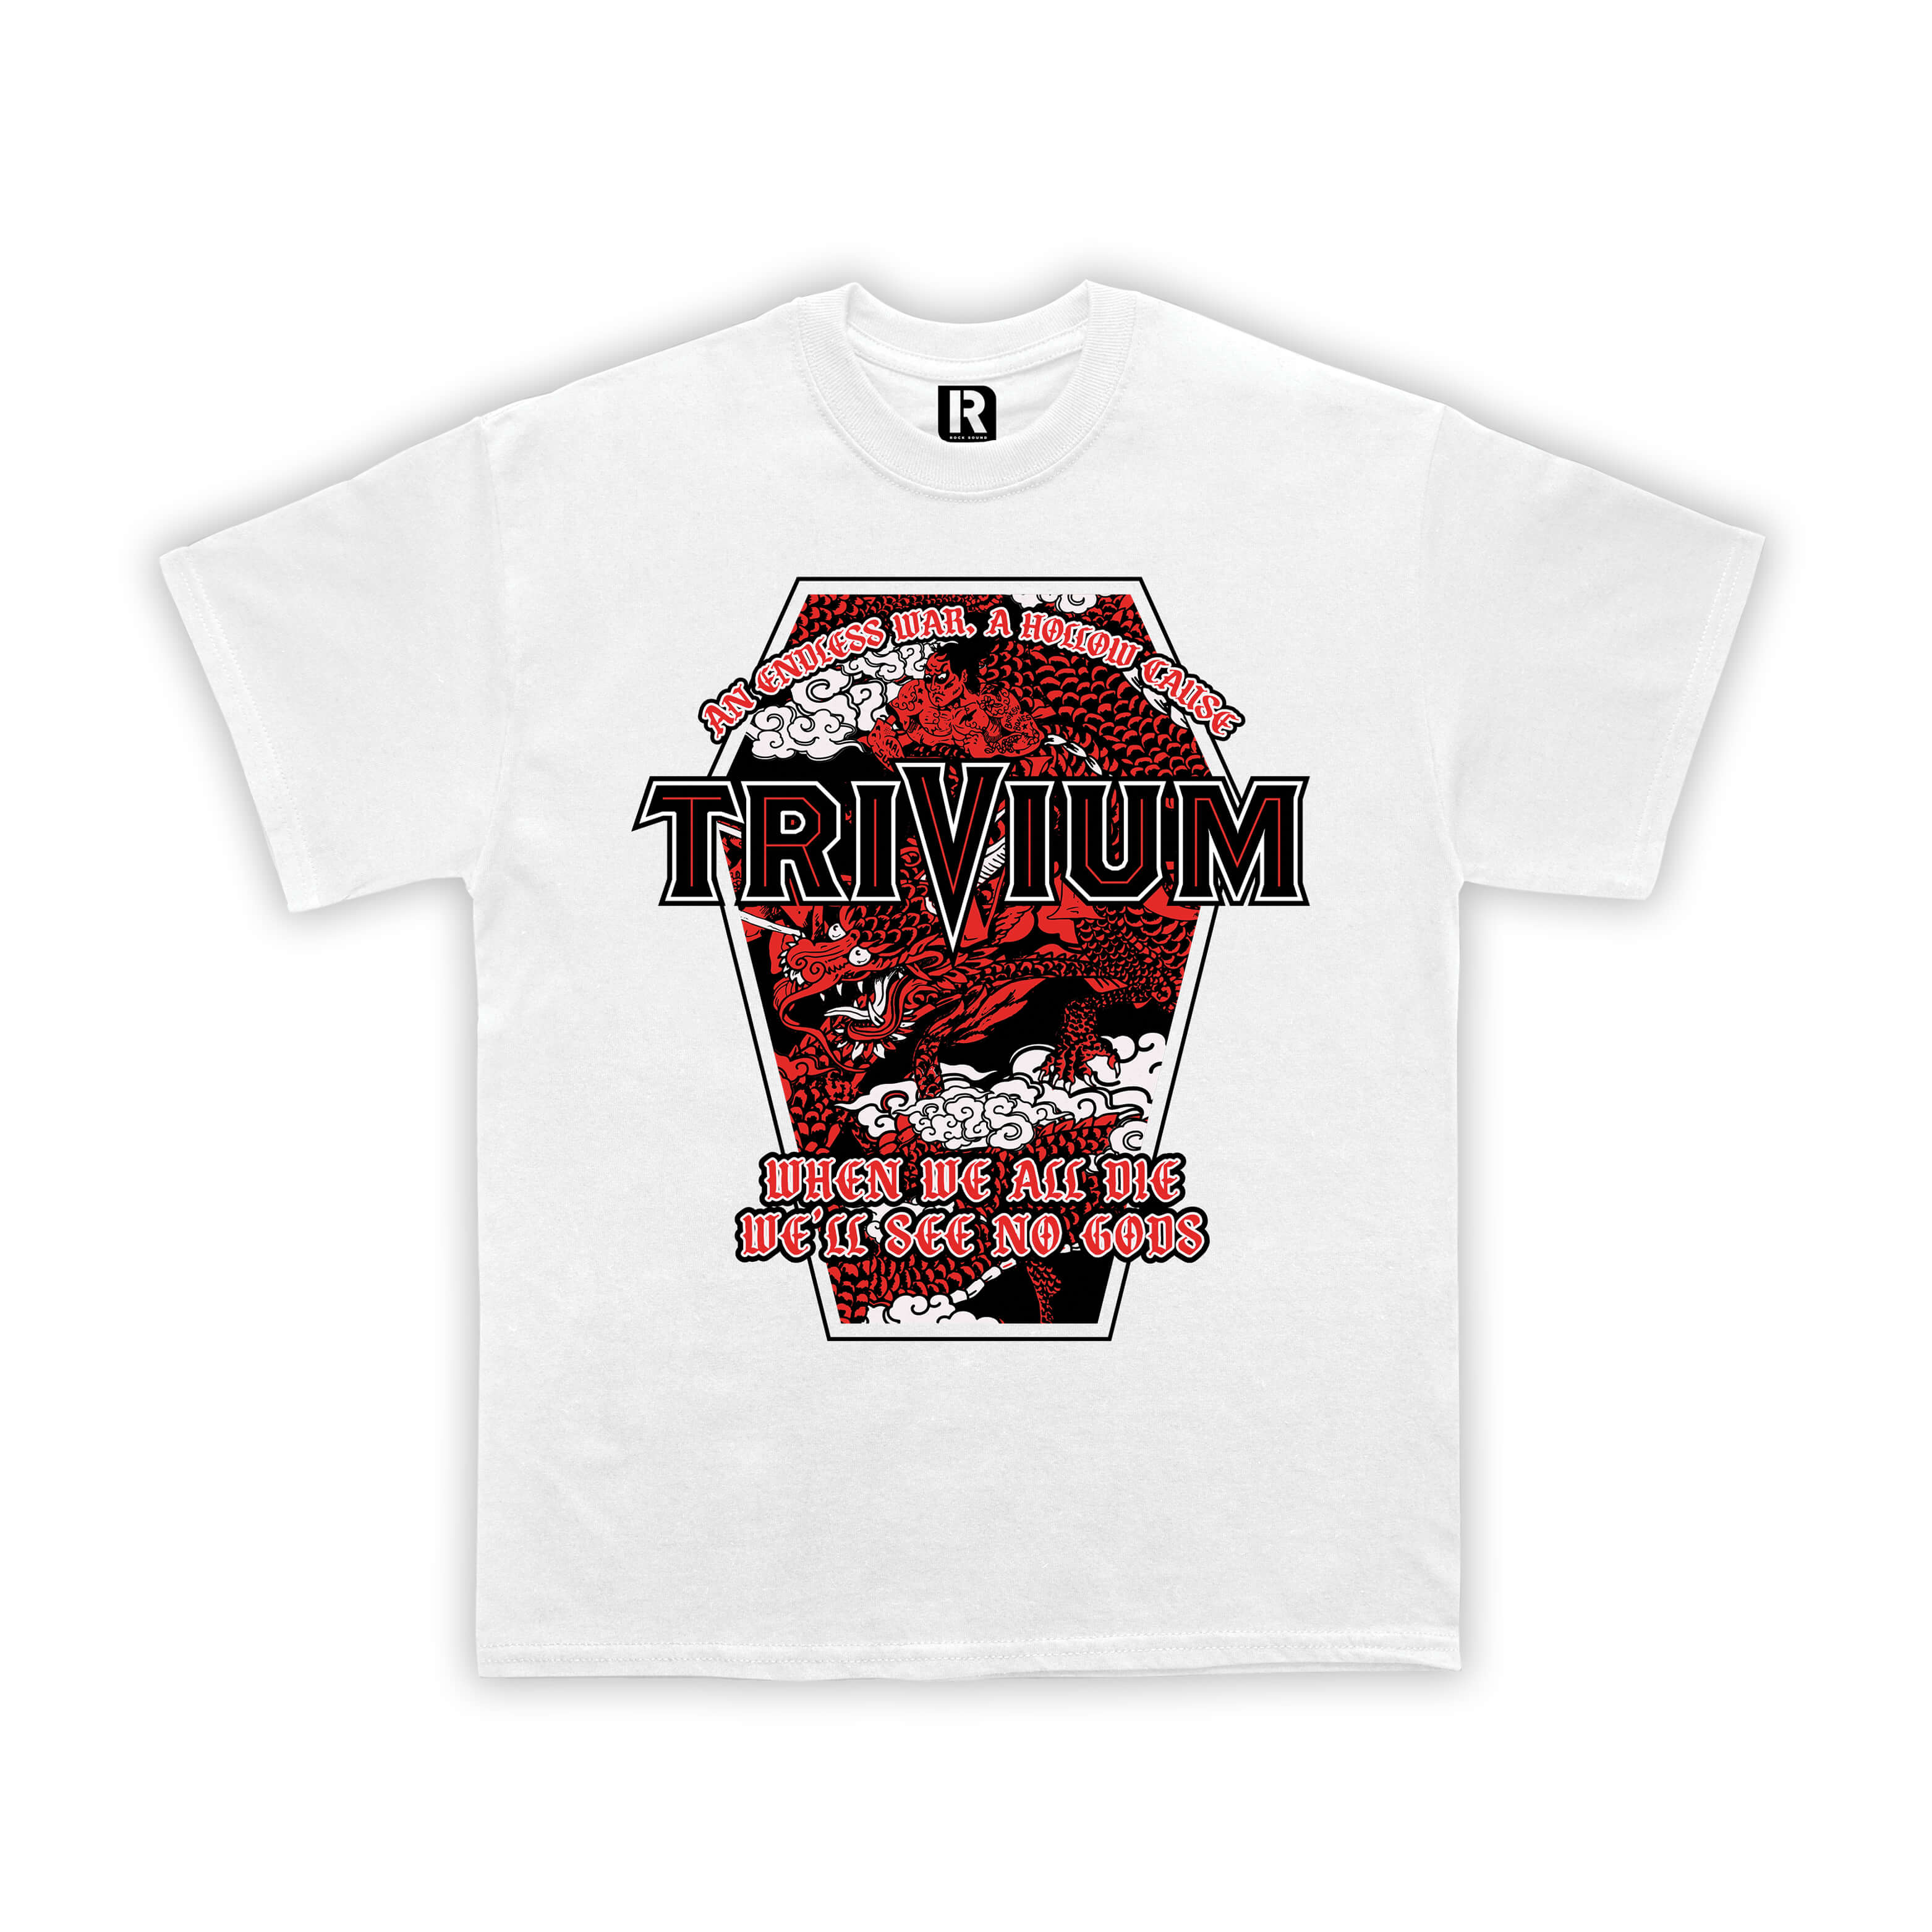 Trivium - When We All Die T-Shirt